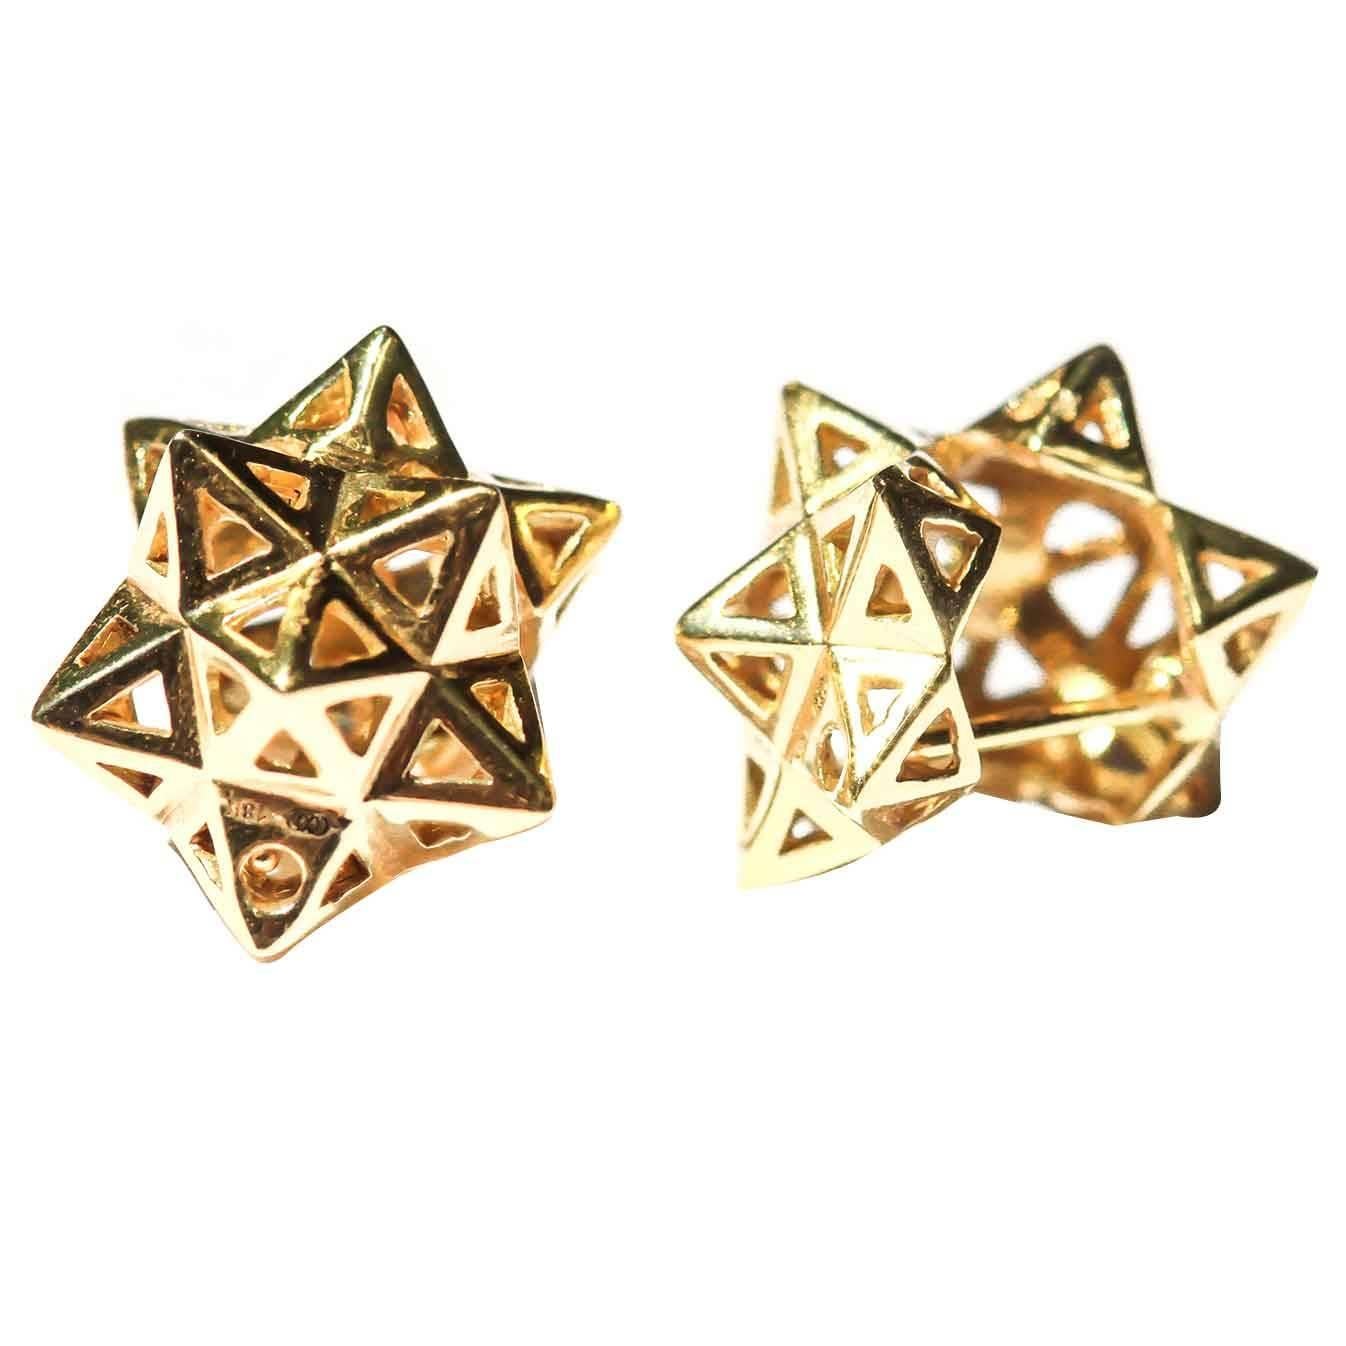 Framed Mini Tetra Gold Earrings